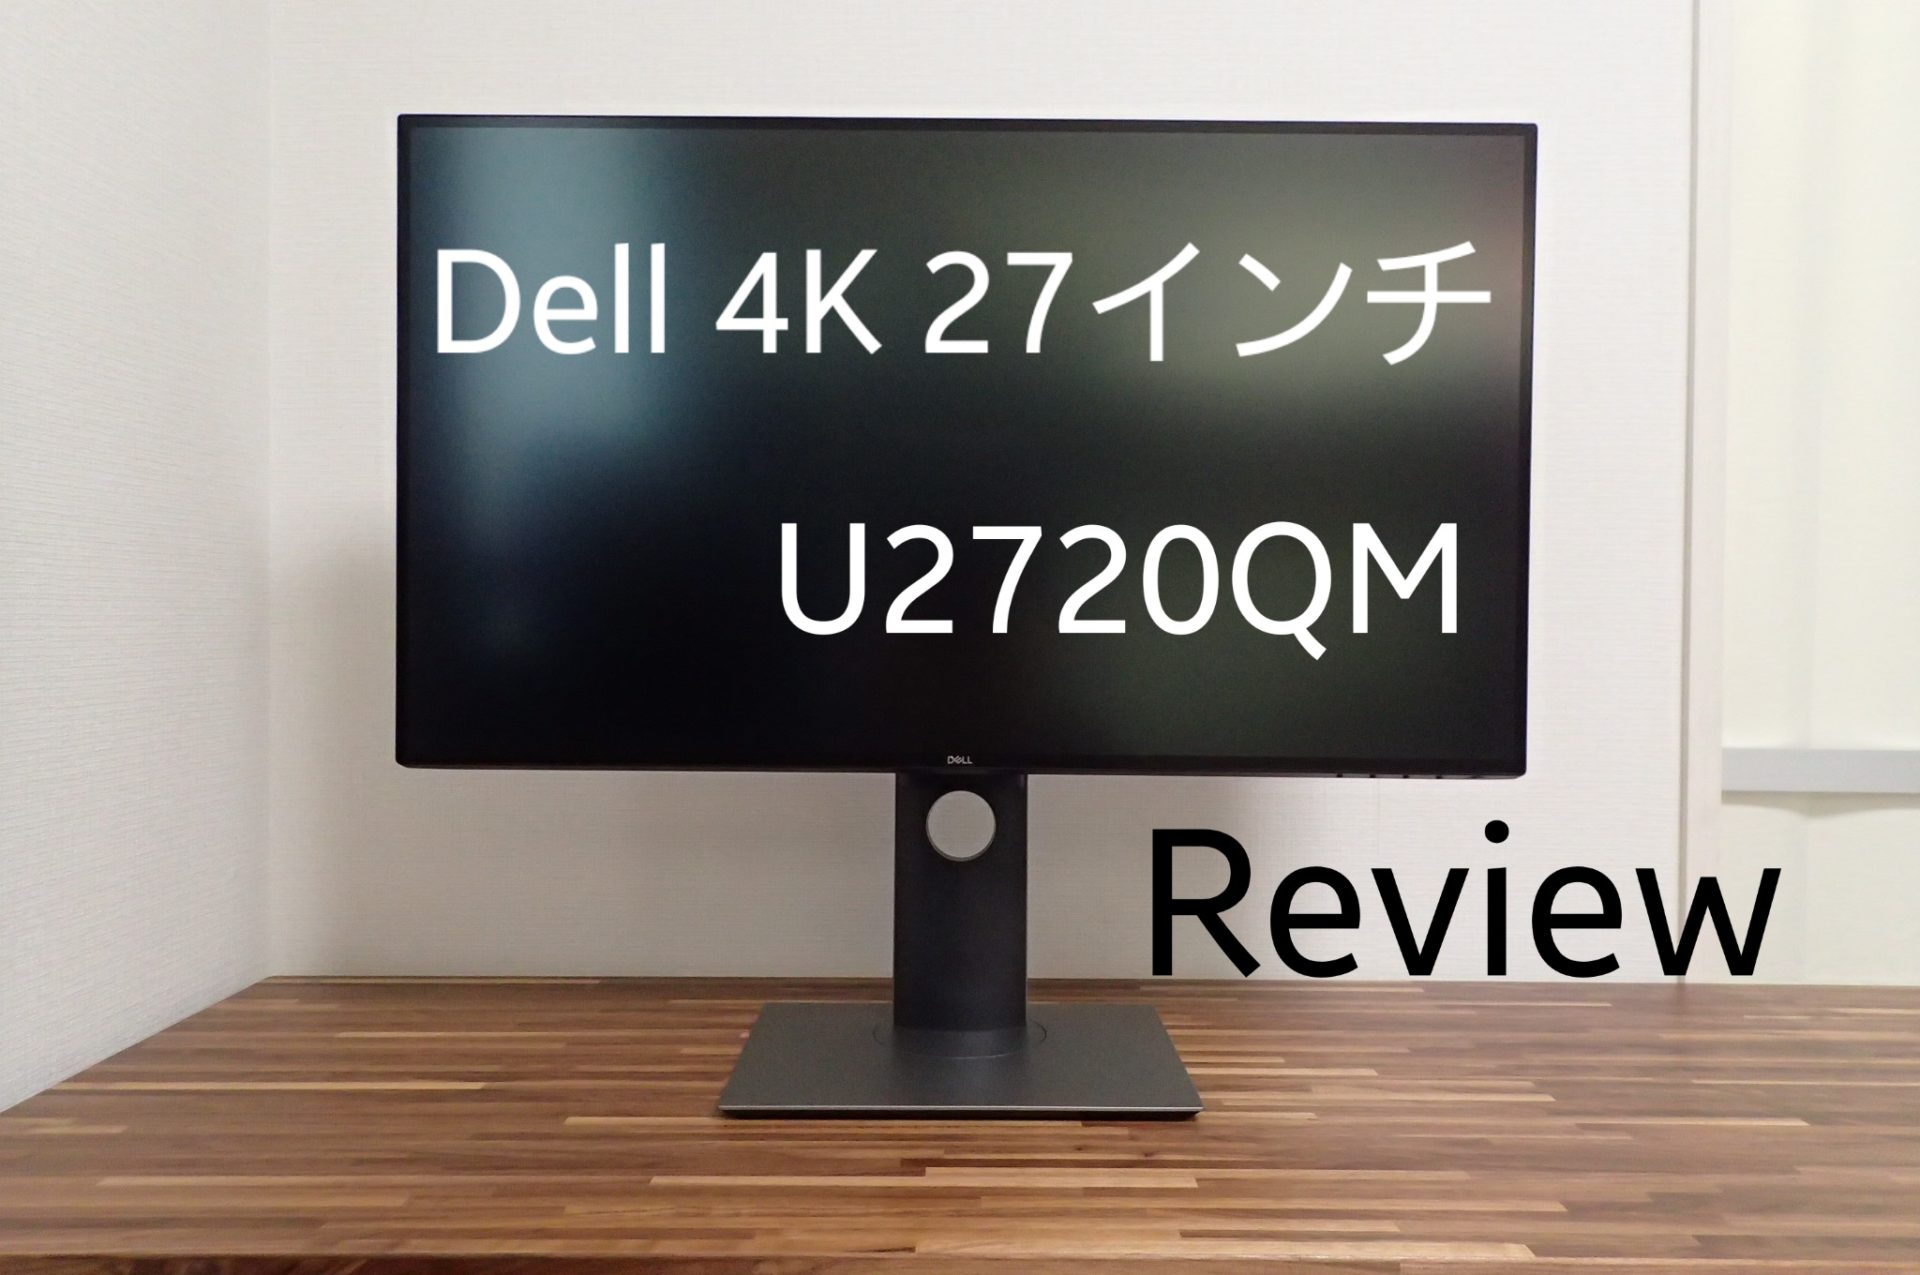 4K 27インチの最適解】Dell U2720QM レビュー【PS5にもおすすめ 